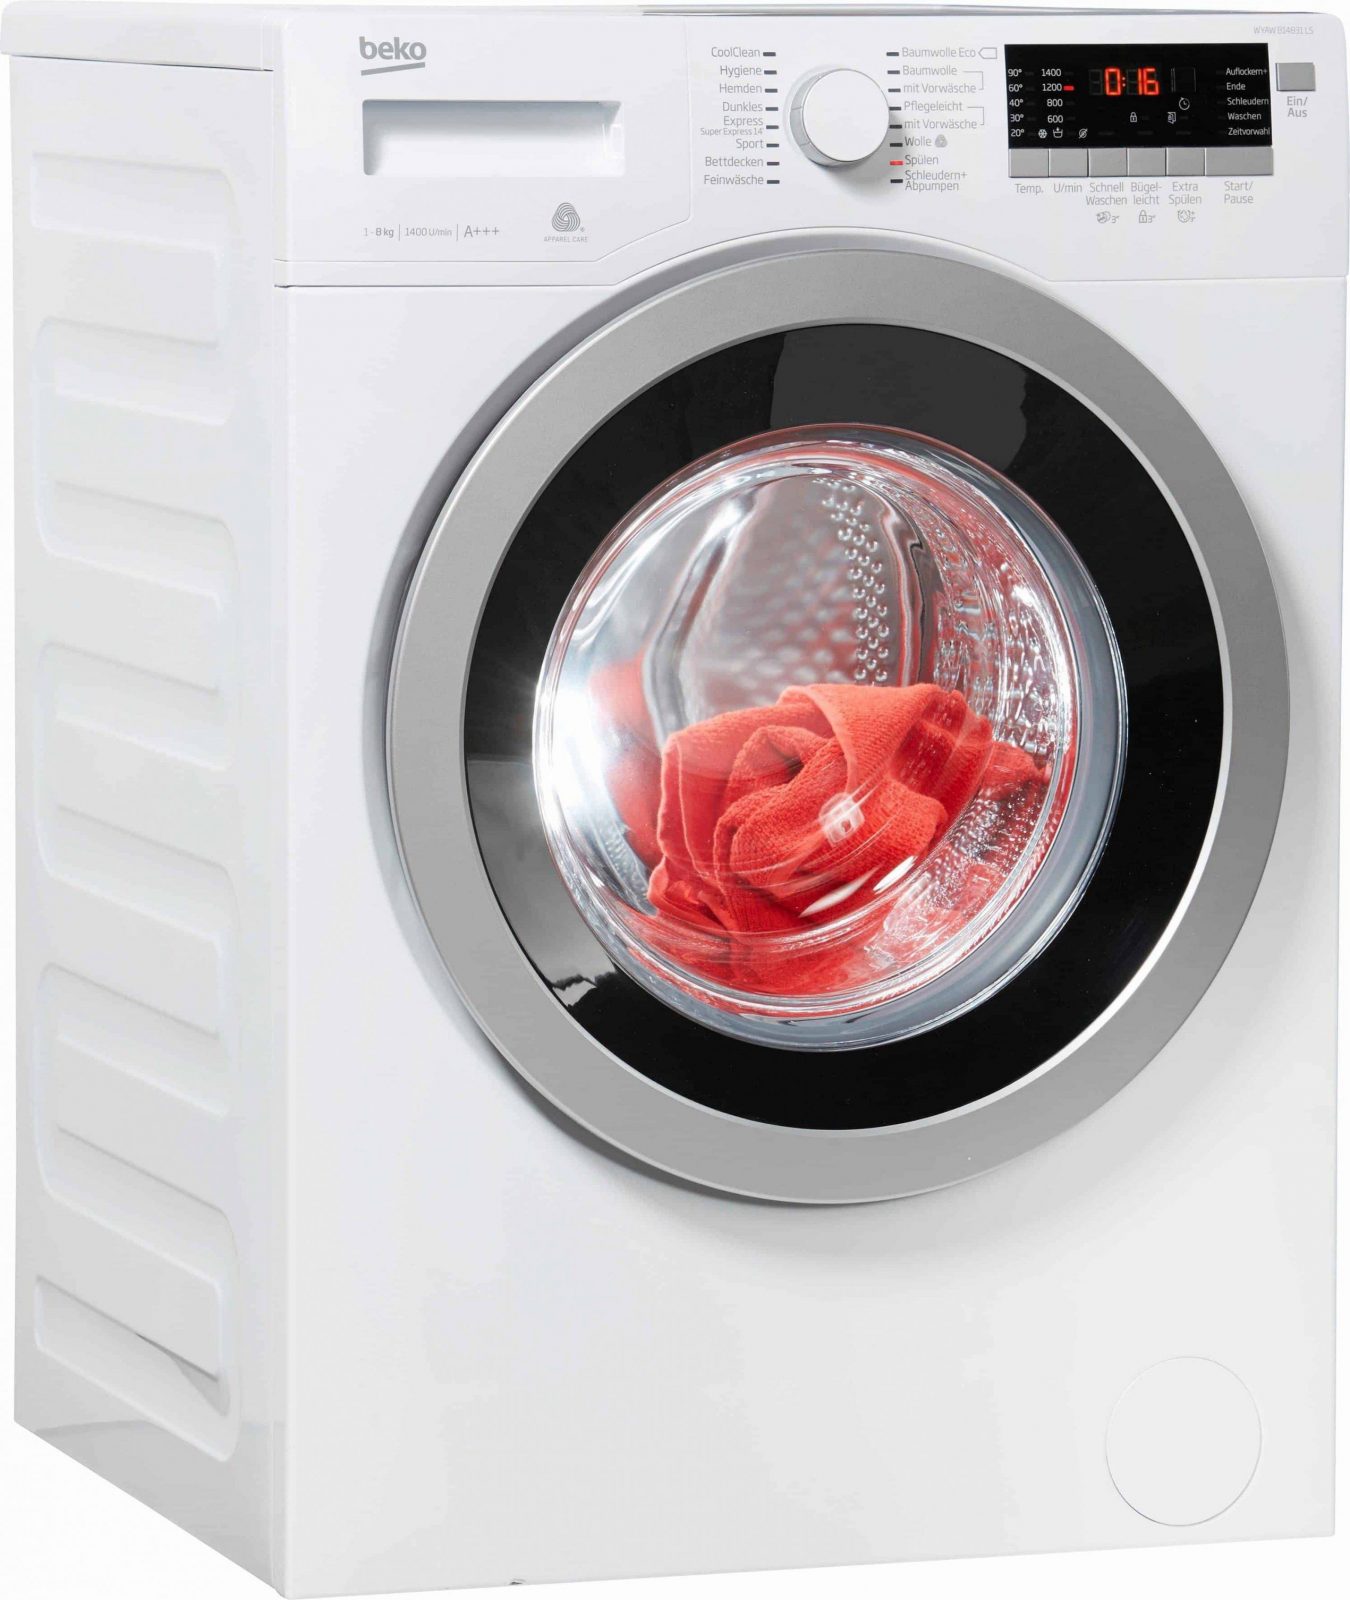 Beko Wyaw 814831 Ls Waschmaschine Im Test 2018 von Beko Wml 51431 E Test Photo